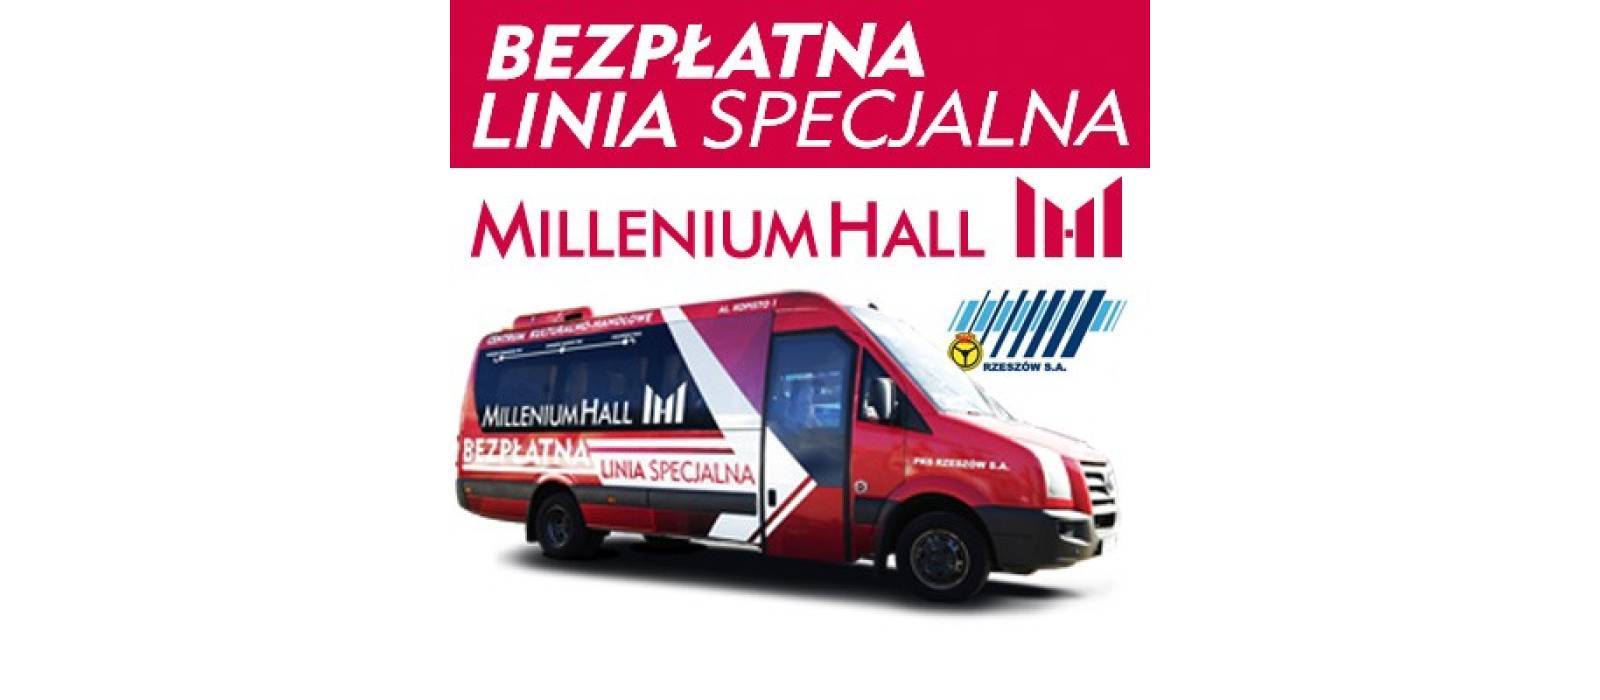 BEZPŁATNA LINIA SPECJALNA MILLENIUM HALL - 1